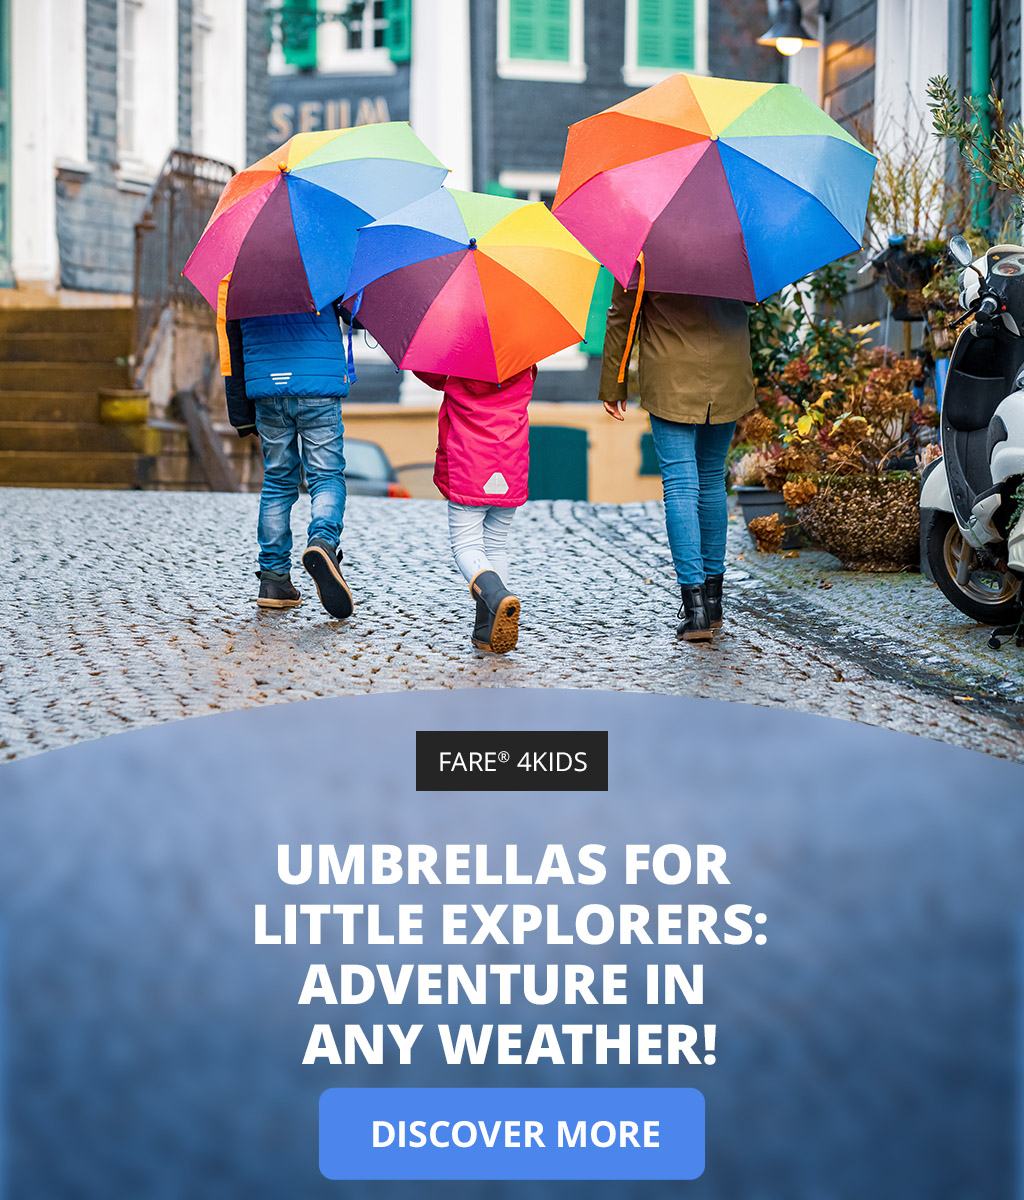 FARE kids umbrellas